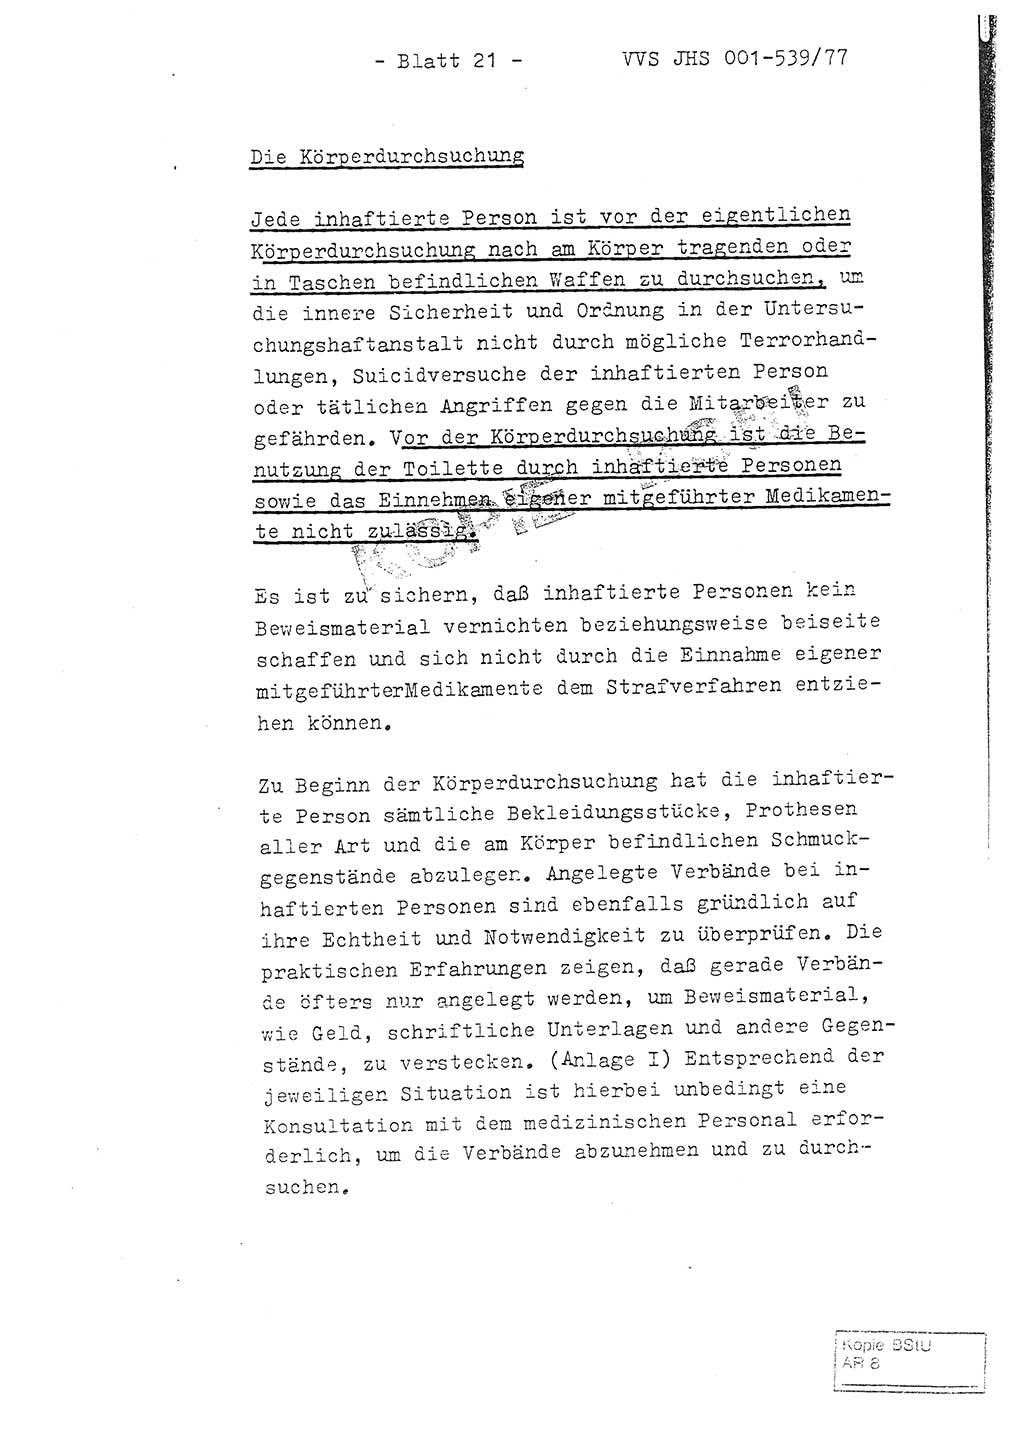 Fachschulabschlußarbeit Hauptmann Dietrich Jung (Abt. ⅩⅣ), Leutnant Klaus Klötzner (Abt. ⅩⅣ), Ministerium für Staatssicherheit (MfS) [Deutsche Demokratische Republik (DDR)], Juristische Hochschule (JHS), Vertrauliche Verschlußsache (VVS) 001-539/77, Potsdam 1978, Seite 21 (FS-Abschl.-Arb. MfS DDR JHS VVS 001-539/77 1978, S. 21)